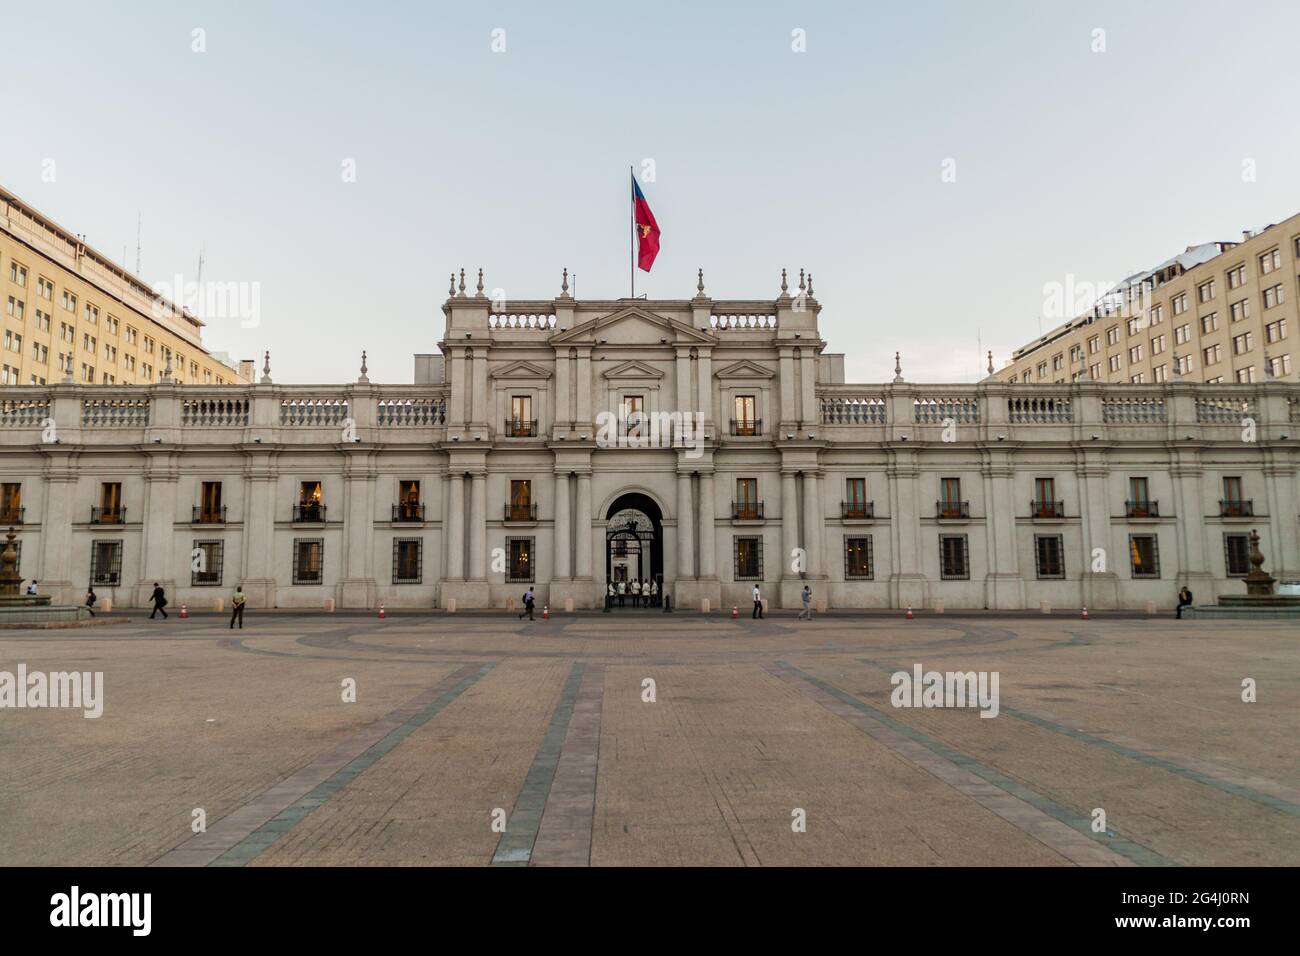 SANTIAGO, CHILE - 27. MÄRZ 2015: La Moneda Palace, Sitz des Präsidenten der Republik Chile, in Santiago, Chile Stockfoto